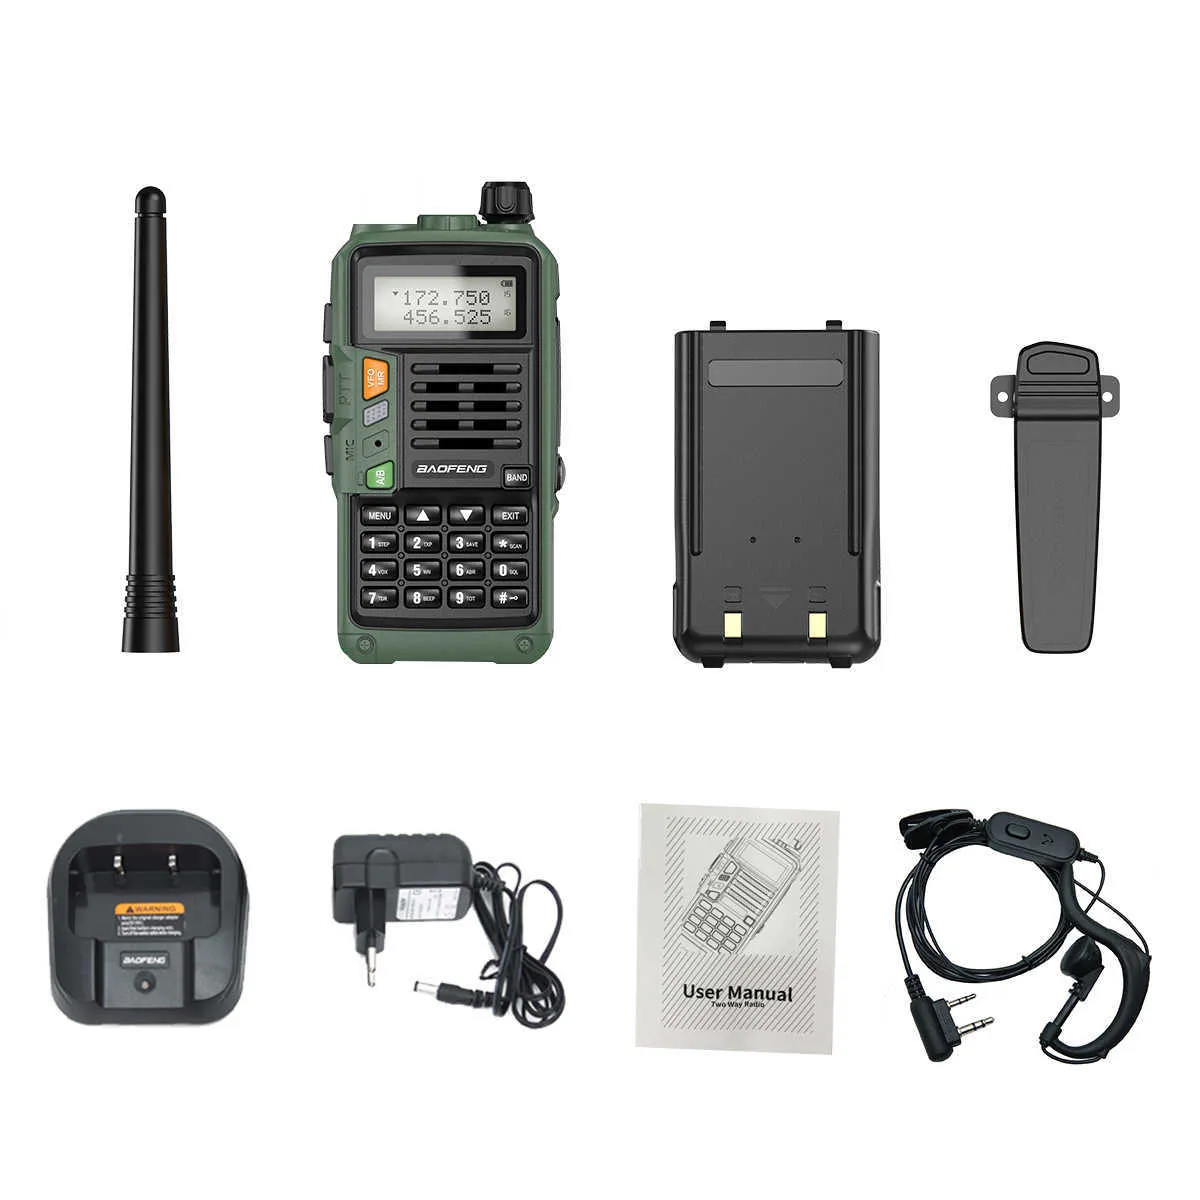 BaoFeng UVS9 Plus puissant talkie-walkie CB émetteur-récepteur Radio 10W 50 KM longue portée Portable pour la chasse forêt mise à niveau 2108173148269